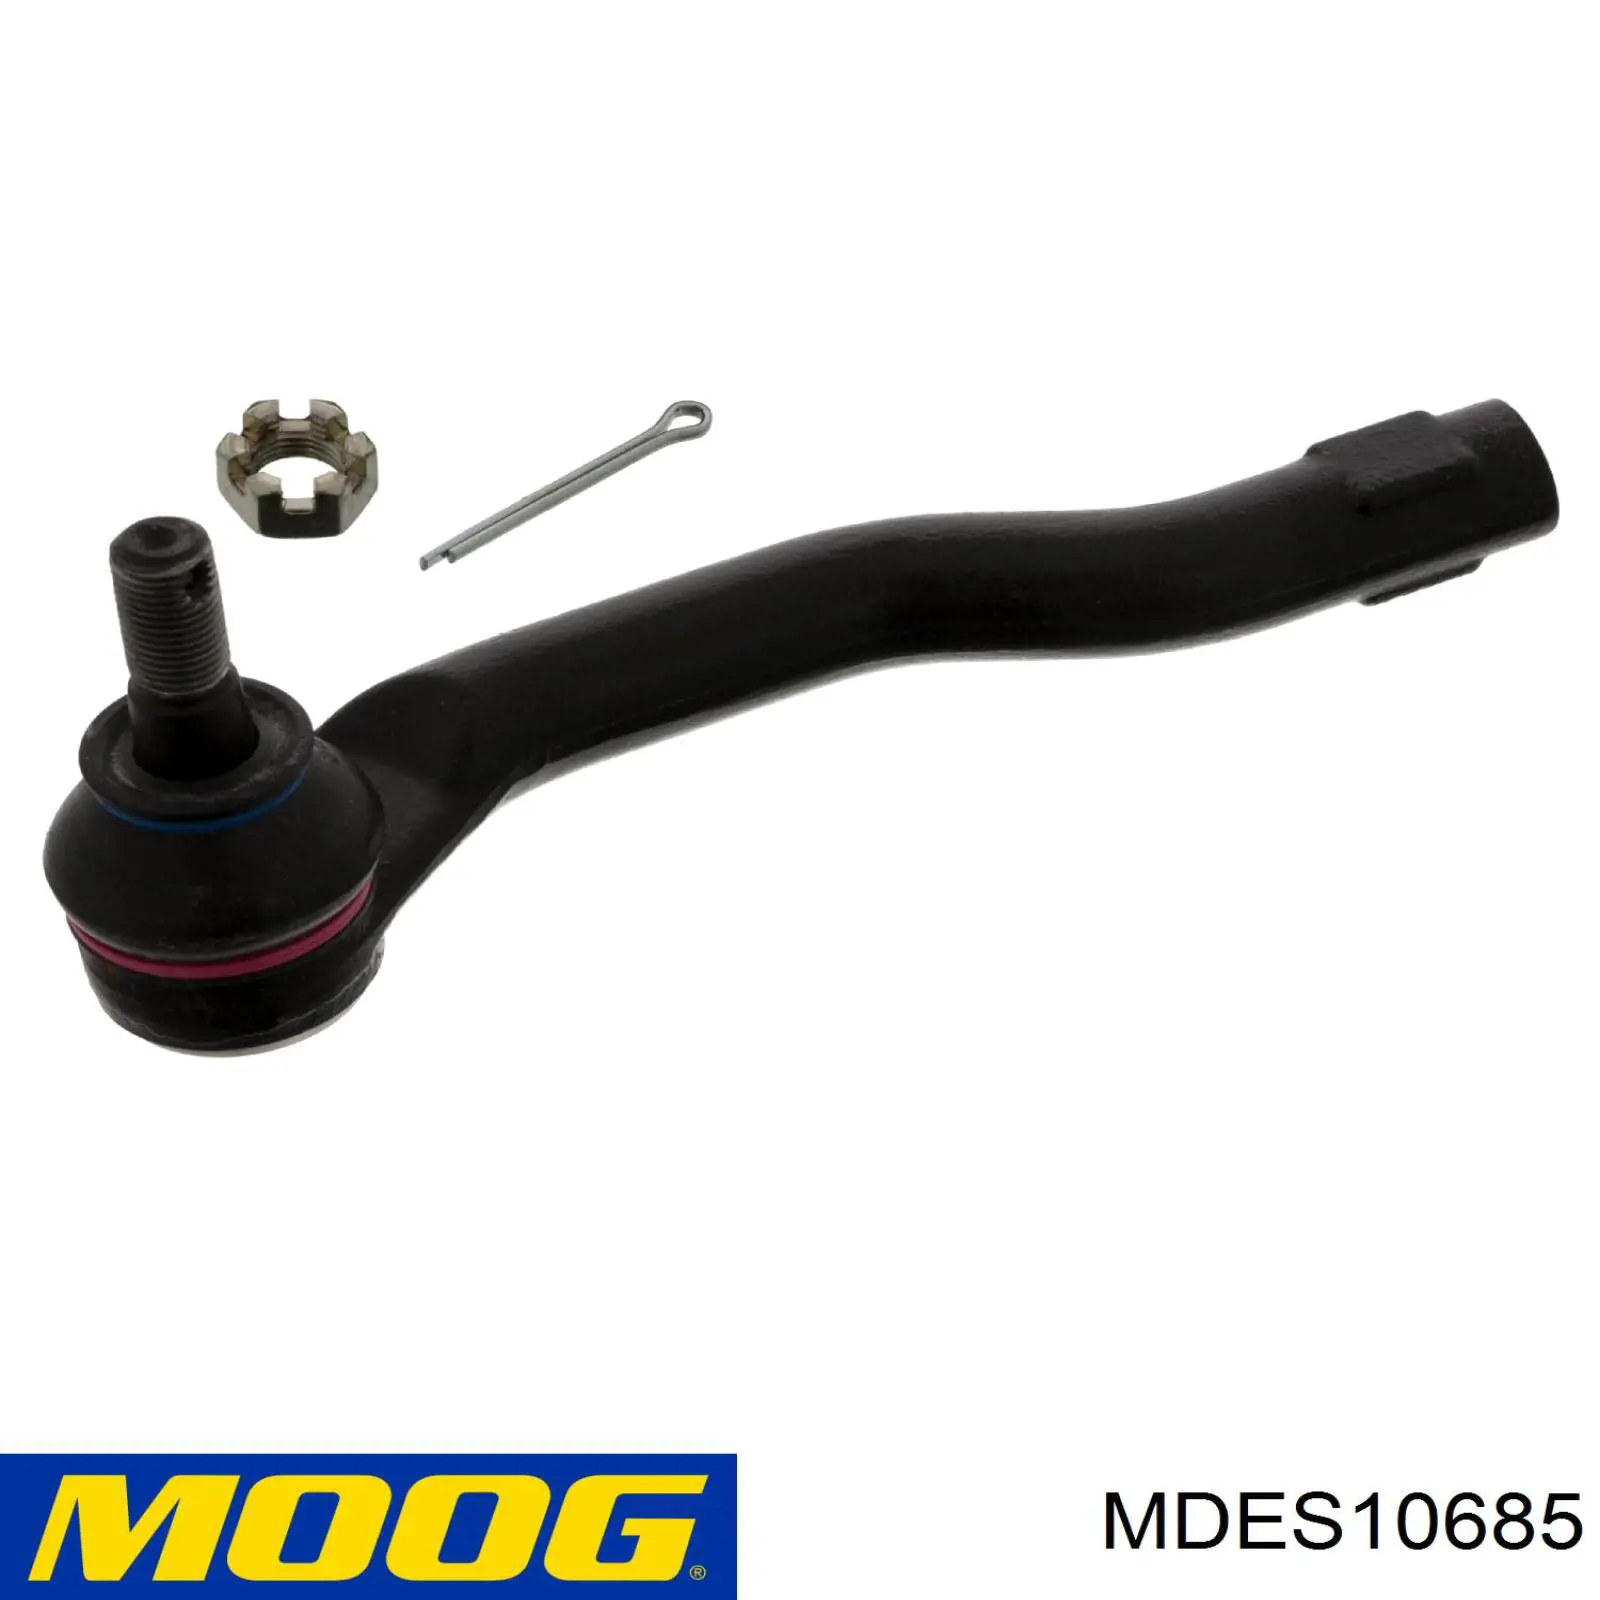 MDES10685 Moog rótula barra de acoplamiento exterior